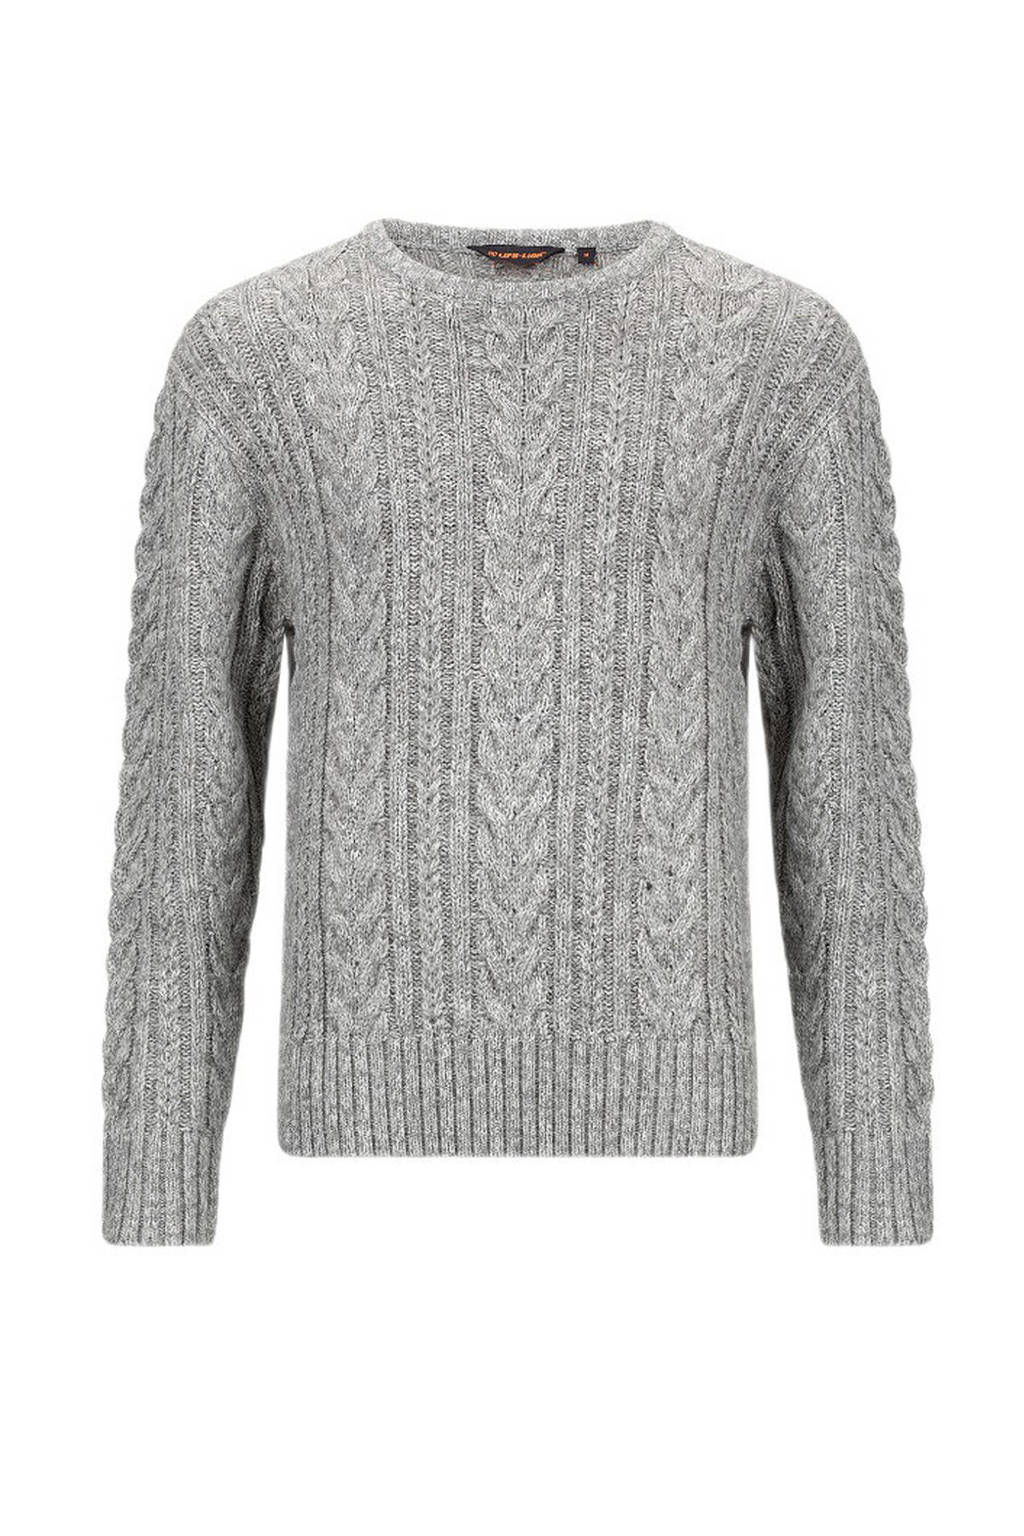 Grijze heren Life-Line outdoor sweater Marvin van katoen met lange mouwen, ronde hals en gebreide details